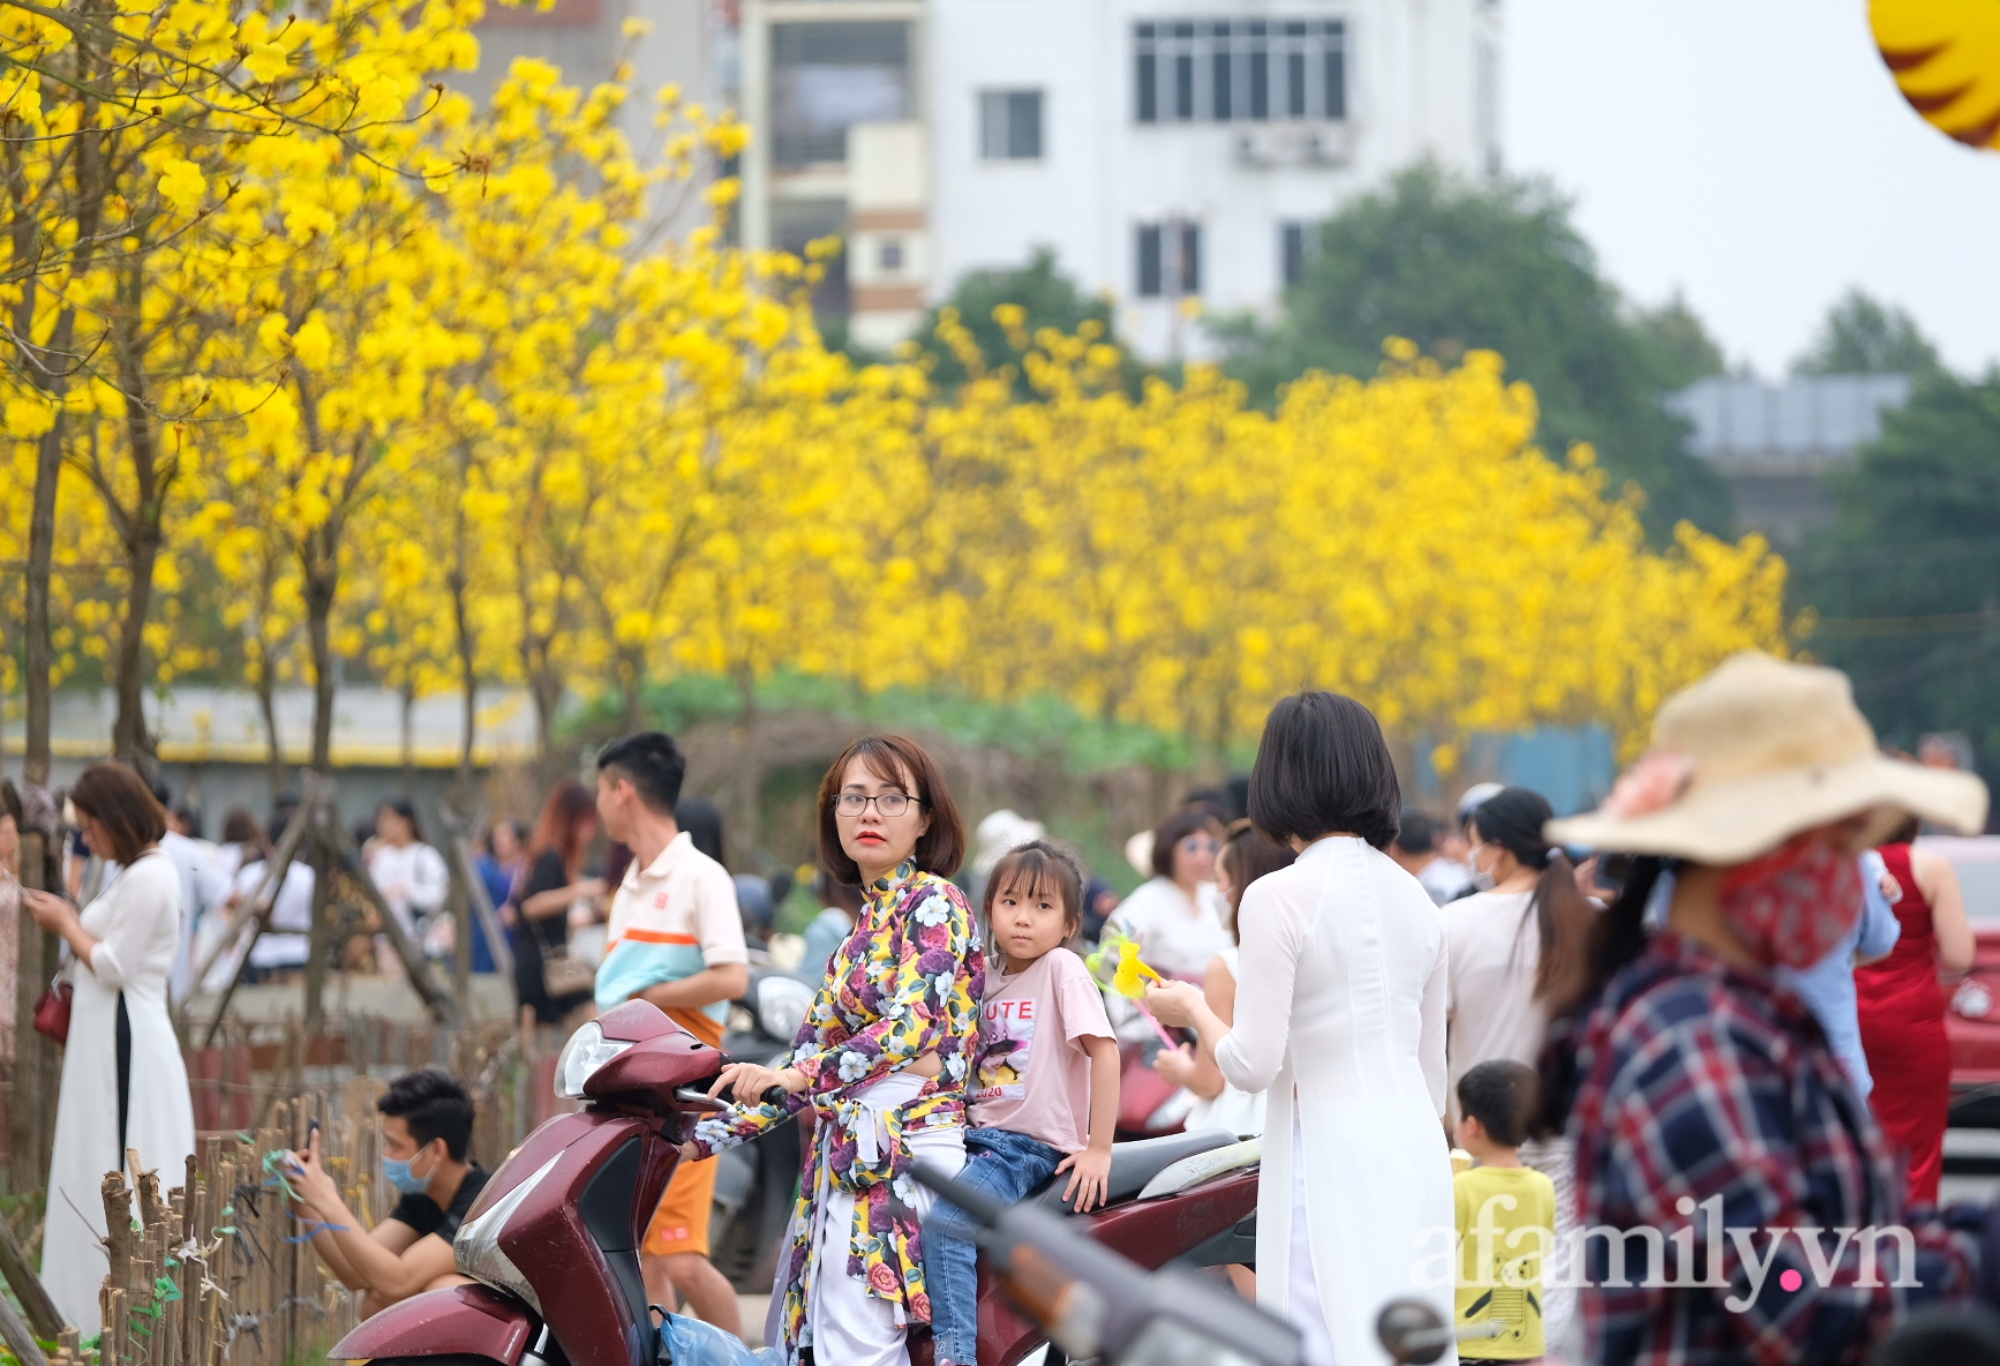 Xuất hiện đường hoa phong linh mới, hàng nghìn người đổ xô đến chụp ảnh cuối tuần - Ảnh 3.